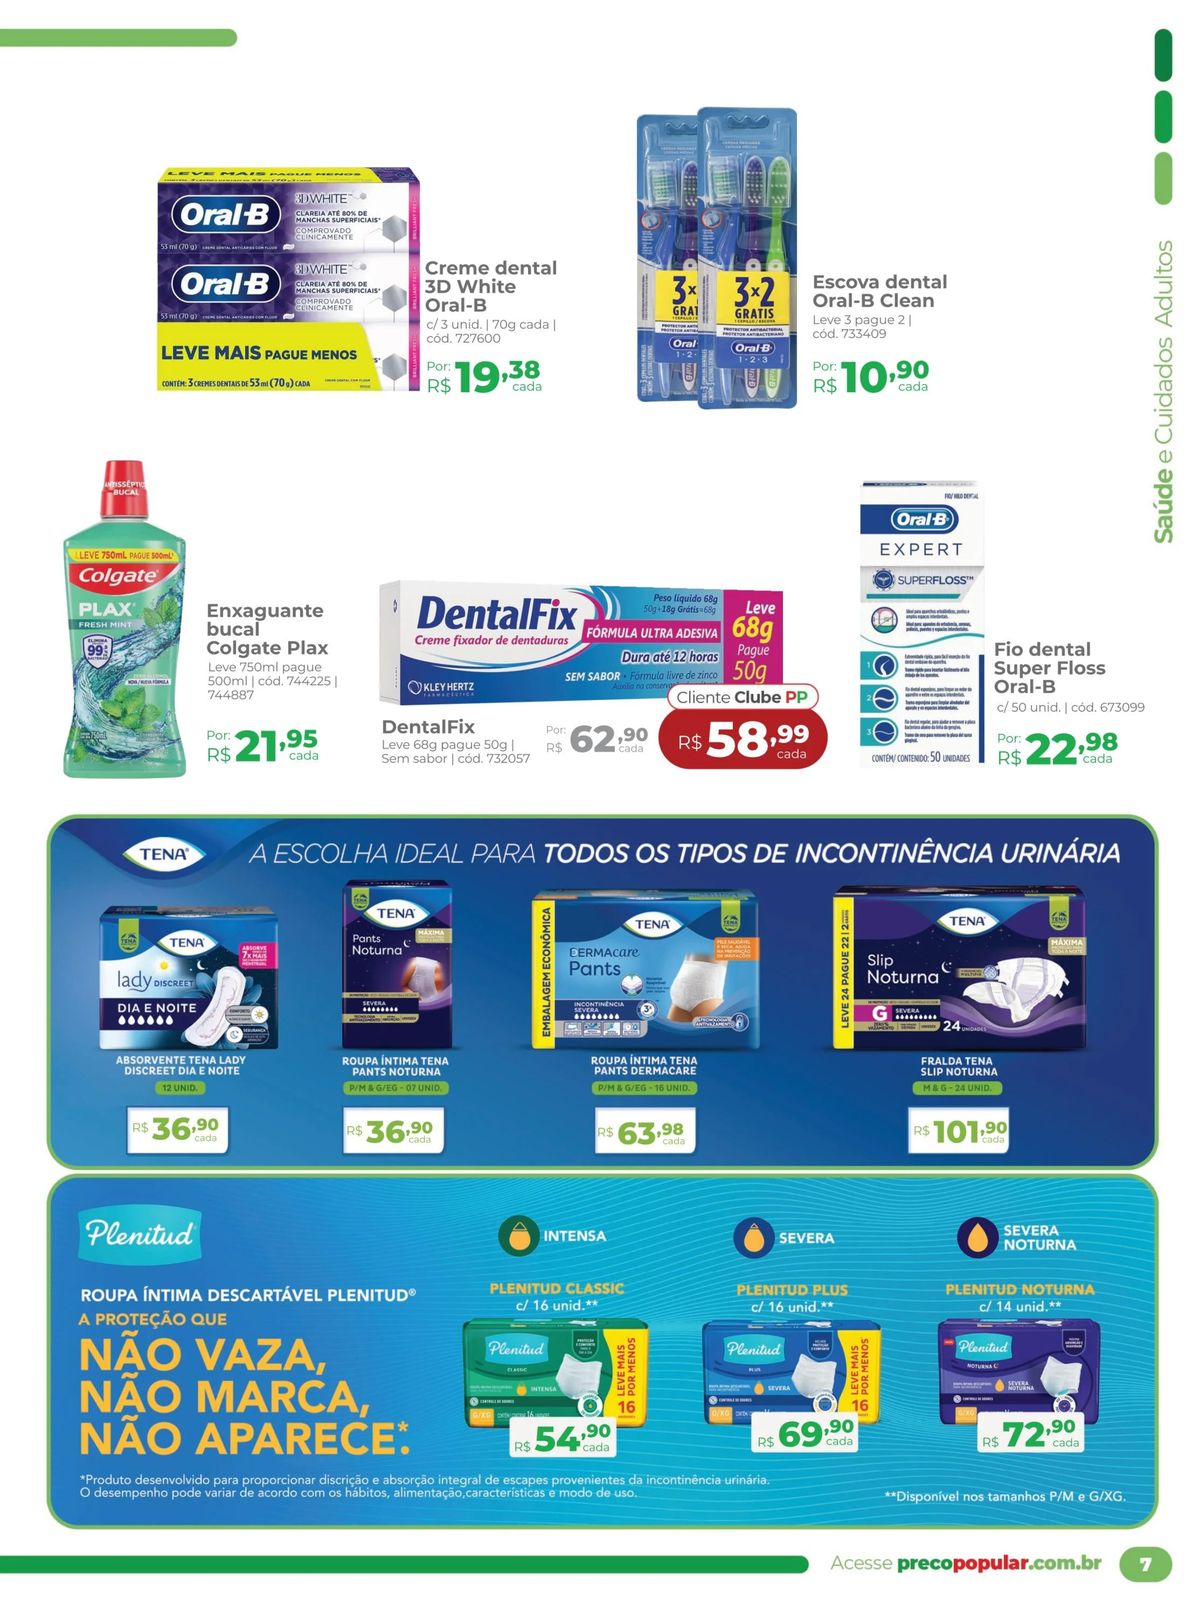 Ofertas em produtos de higiene bucal na Farmácia Preço Popular